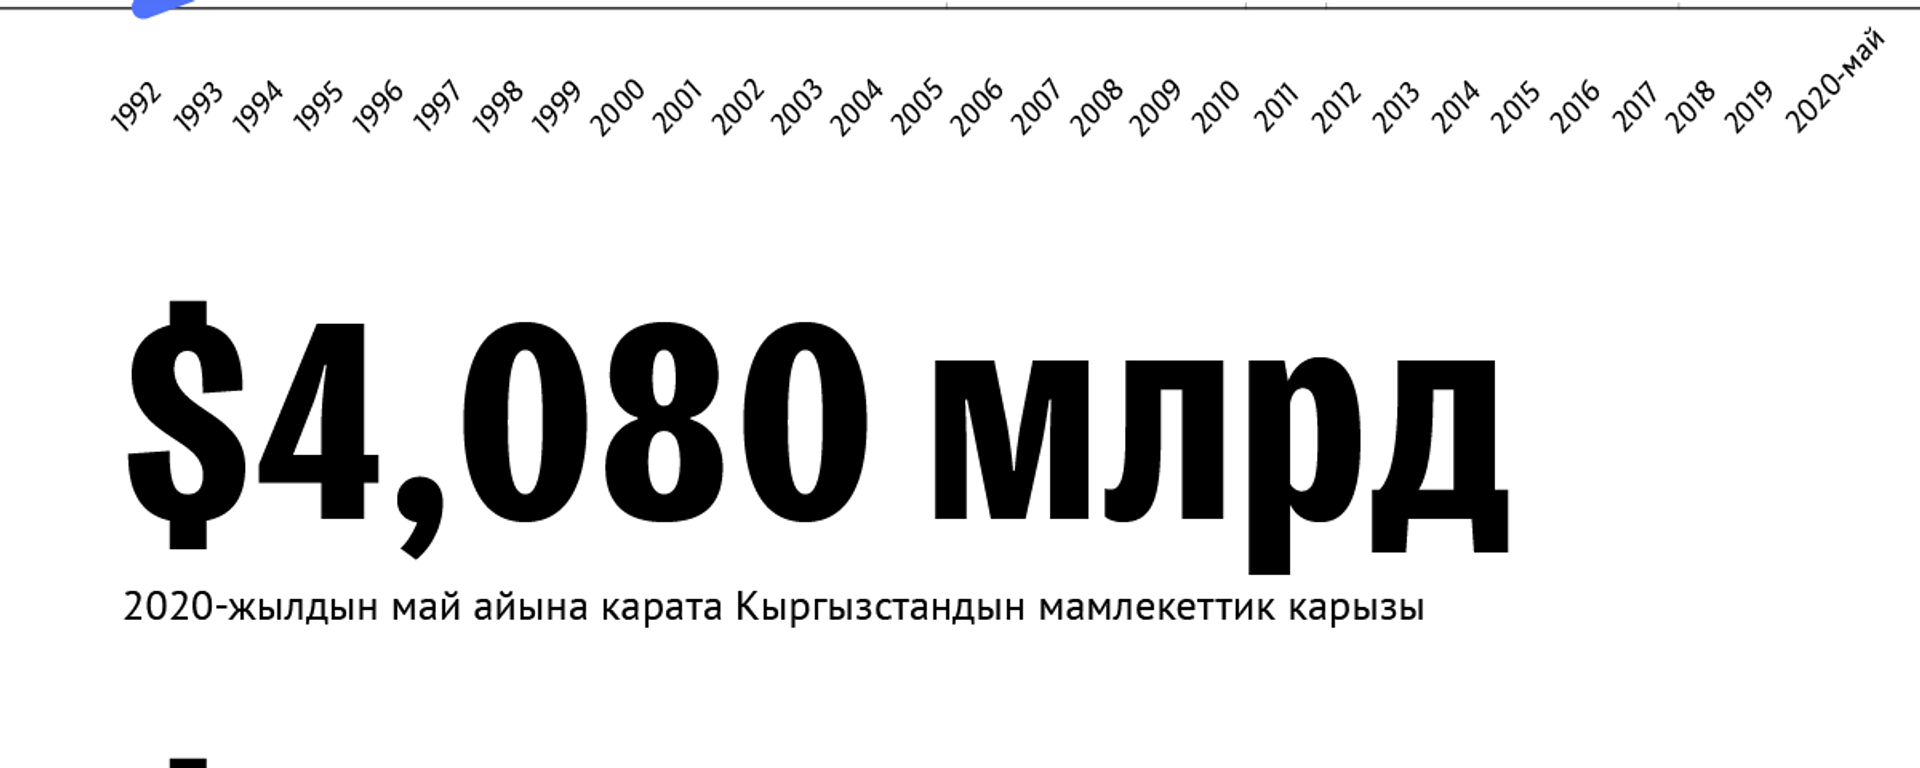 Кыргызстандын мамлекеттик тышкы карызы - Sputnik Кыргызстан, 1920, 08.10.2020